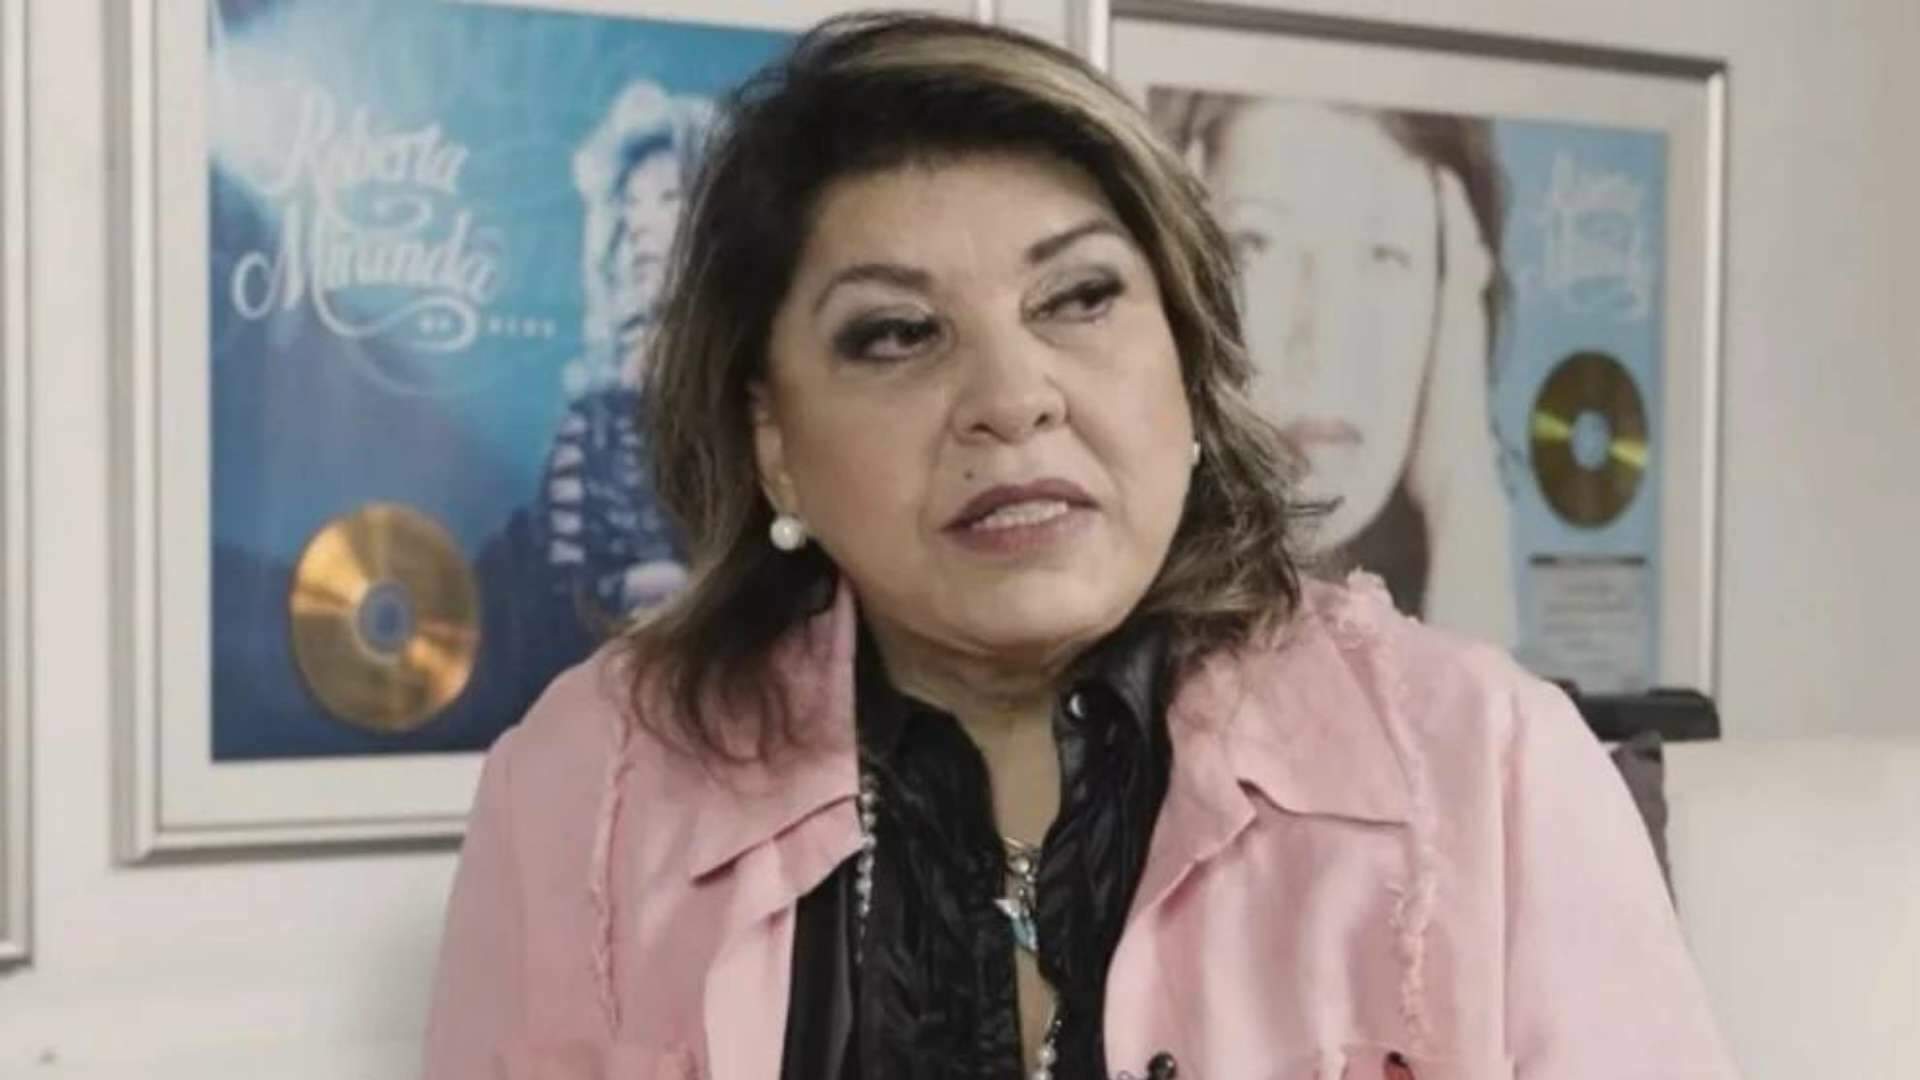 Pela primeira vez, Roberta Miranda expõe sexualidade e dispara: “Namorei até com um travesti” - Metropolitana FM